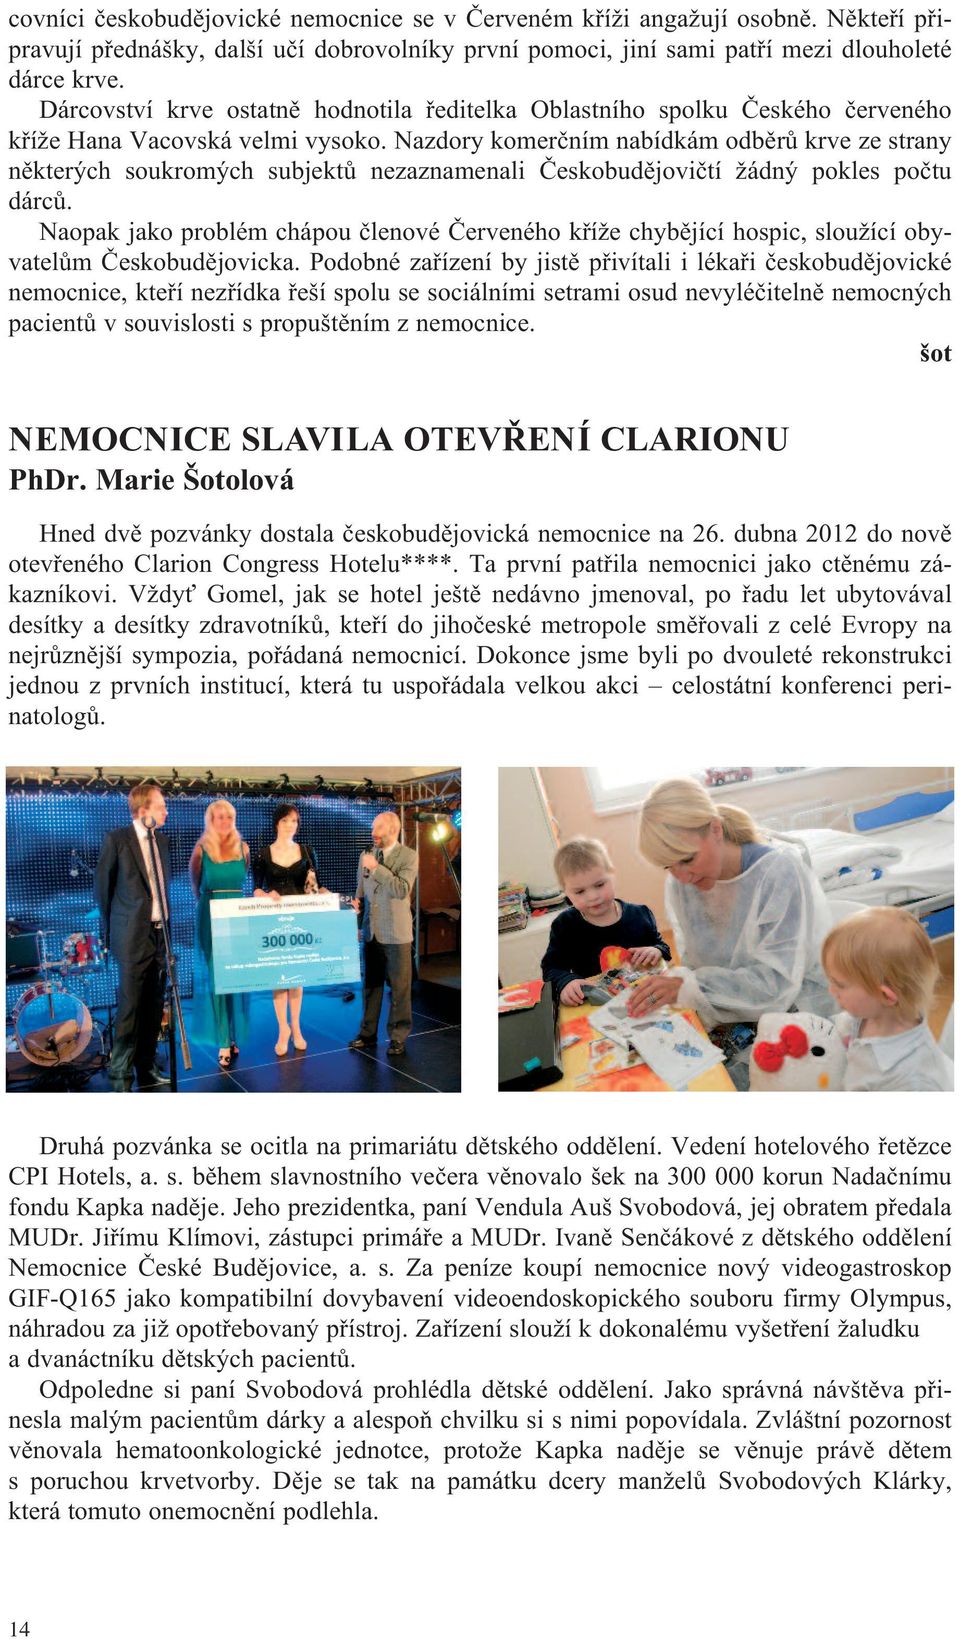 Nazdory komerčním nabídkám odběrů krve ze strany některých soukromých subjektů nezaznamenali Českobudějovičtí žádný pokles počtu dárců.